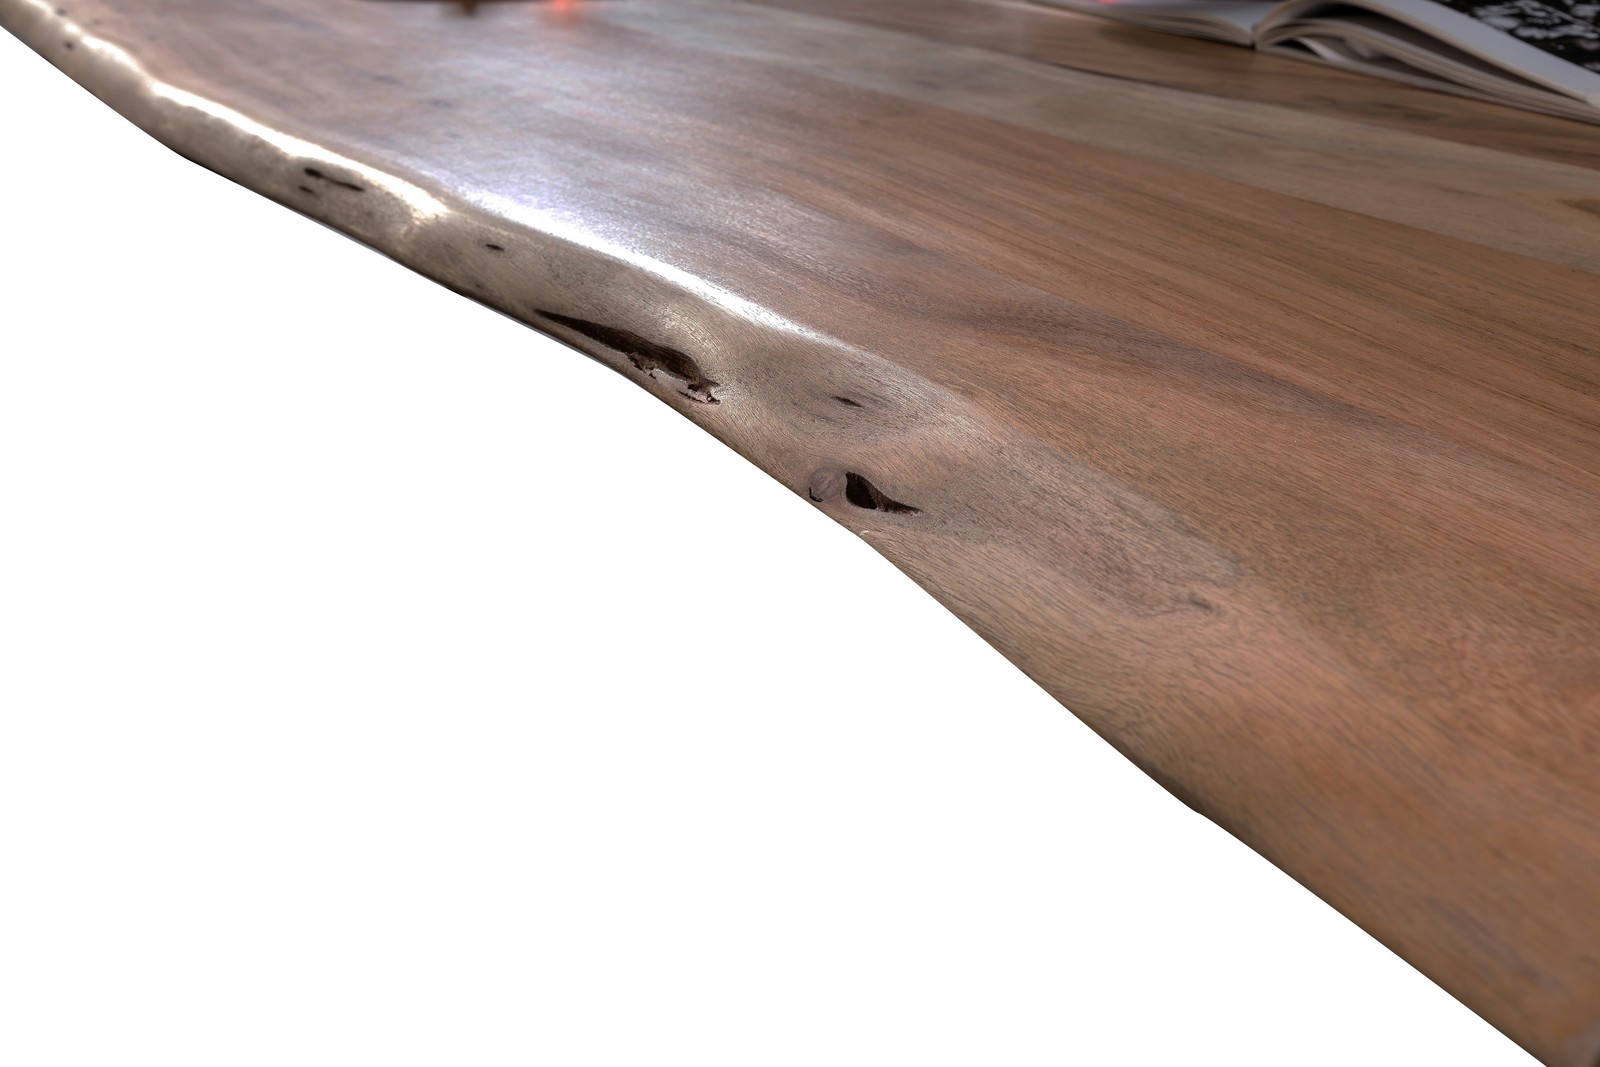 Baumkante-Esstisch TABLES & CO 140 x 80 cm Akazie nussfarben